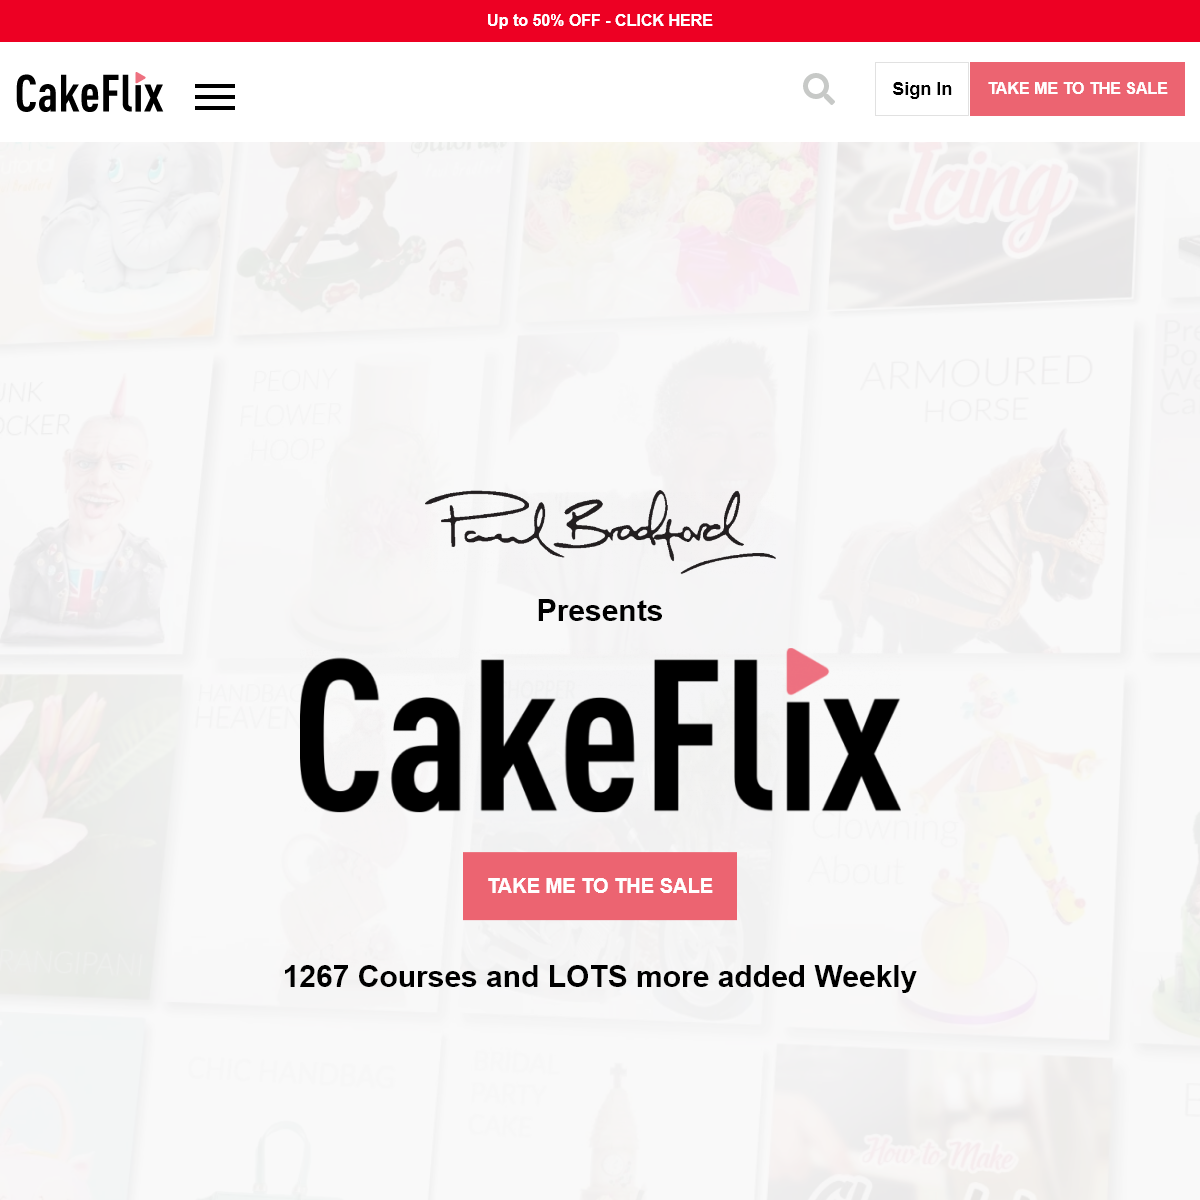 A complete backup of cakeflix.com